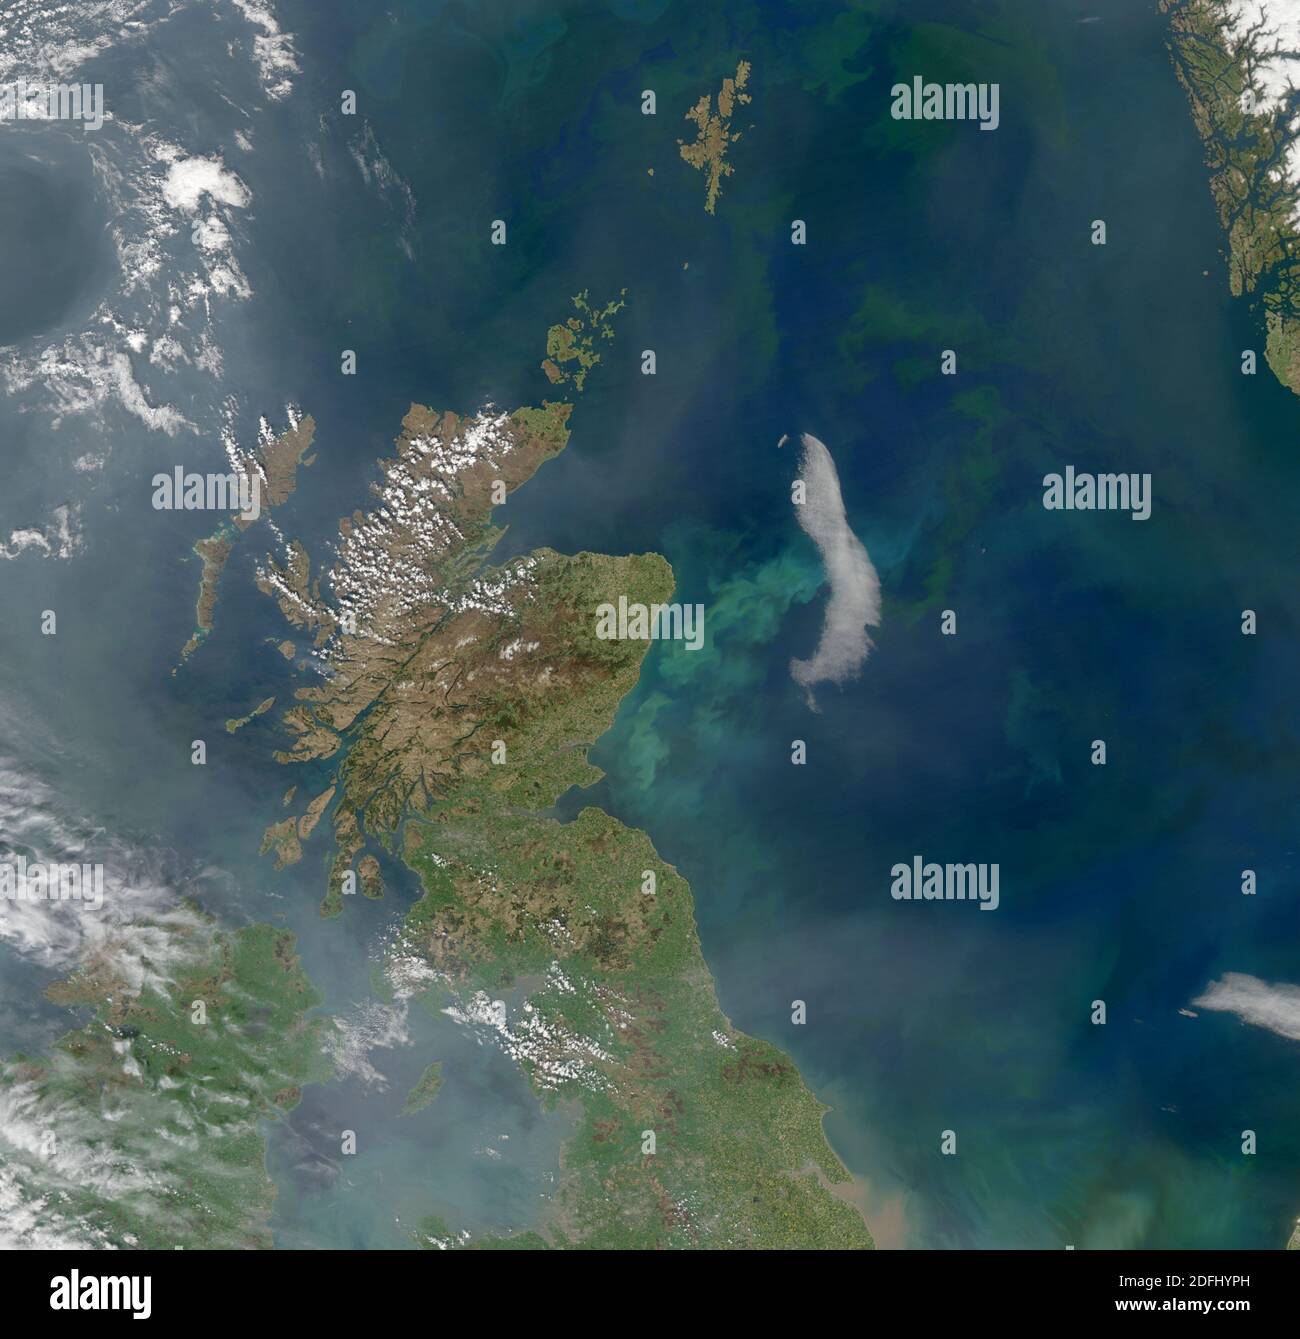 SCOZIA - 2008 - questa spettacolare immagine da un satellite della NASA mostra l'Inghilterra settentrionale e la Scozia, oltre ad una vasta fascia del Mare del Nord - Foto: Geop Foto Stock